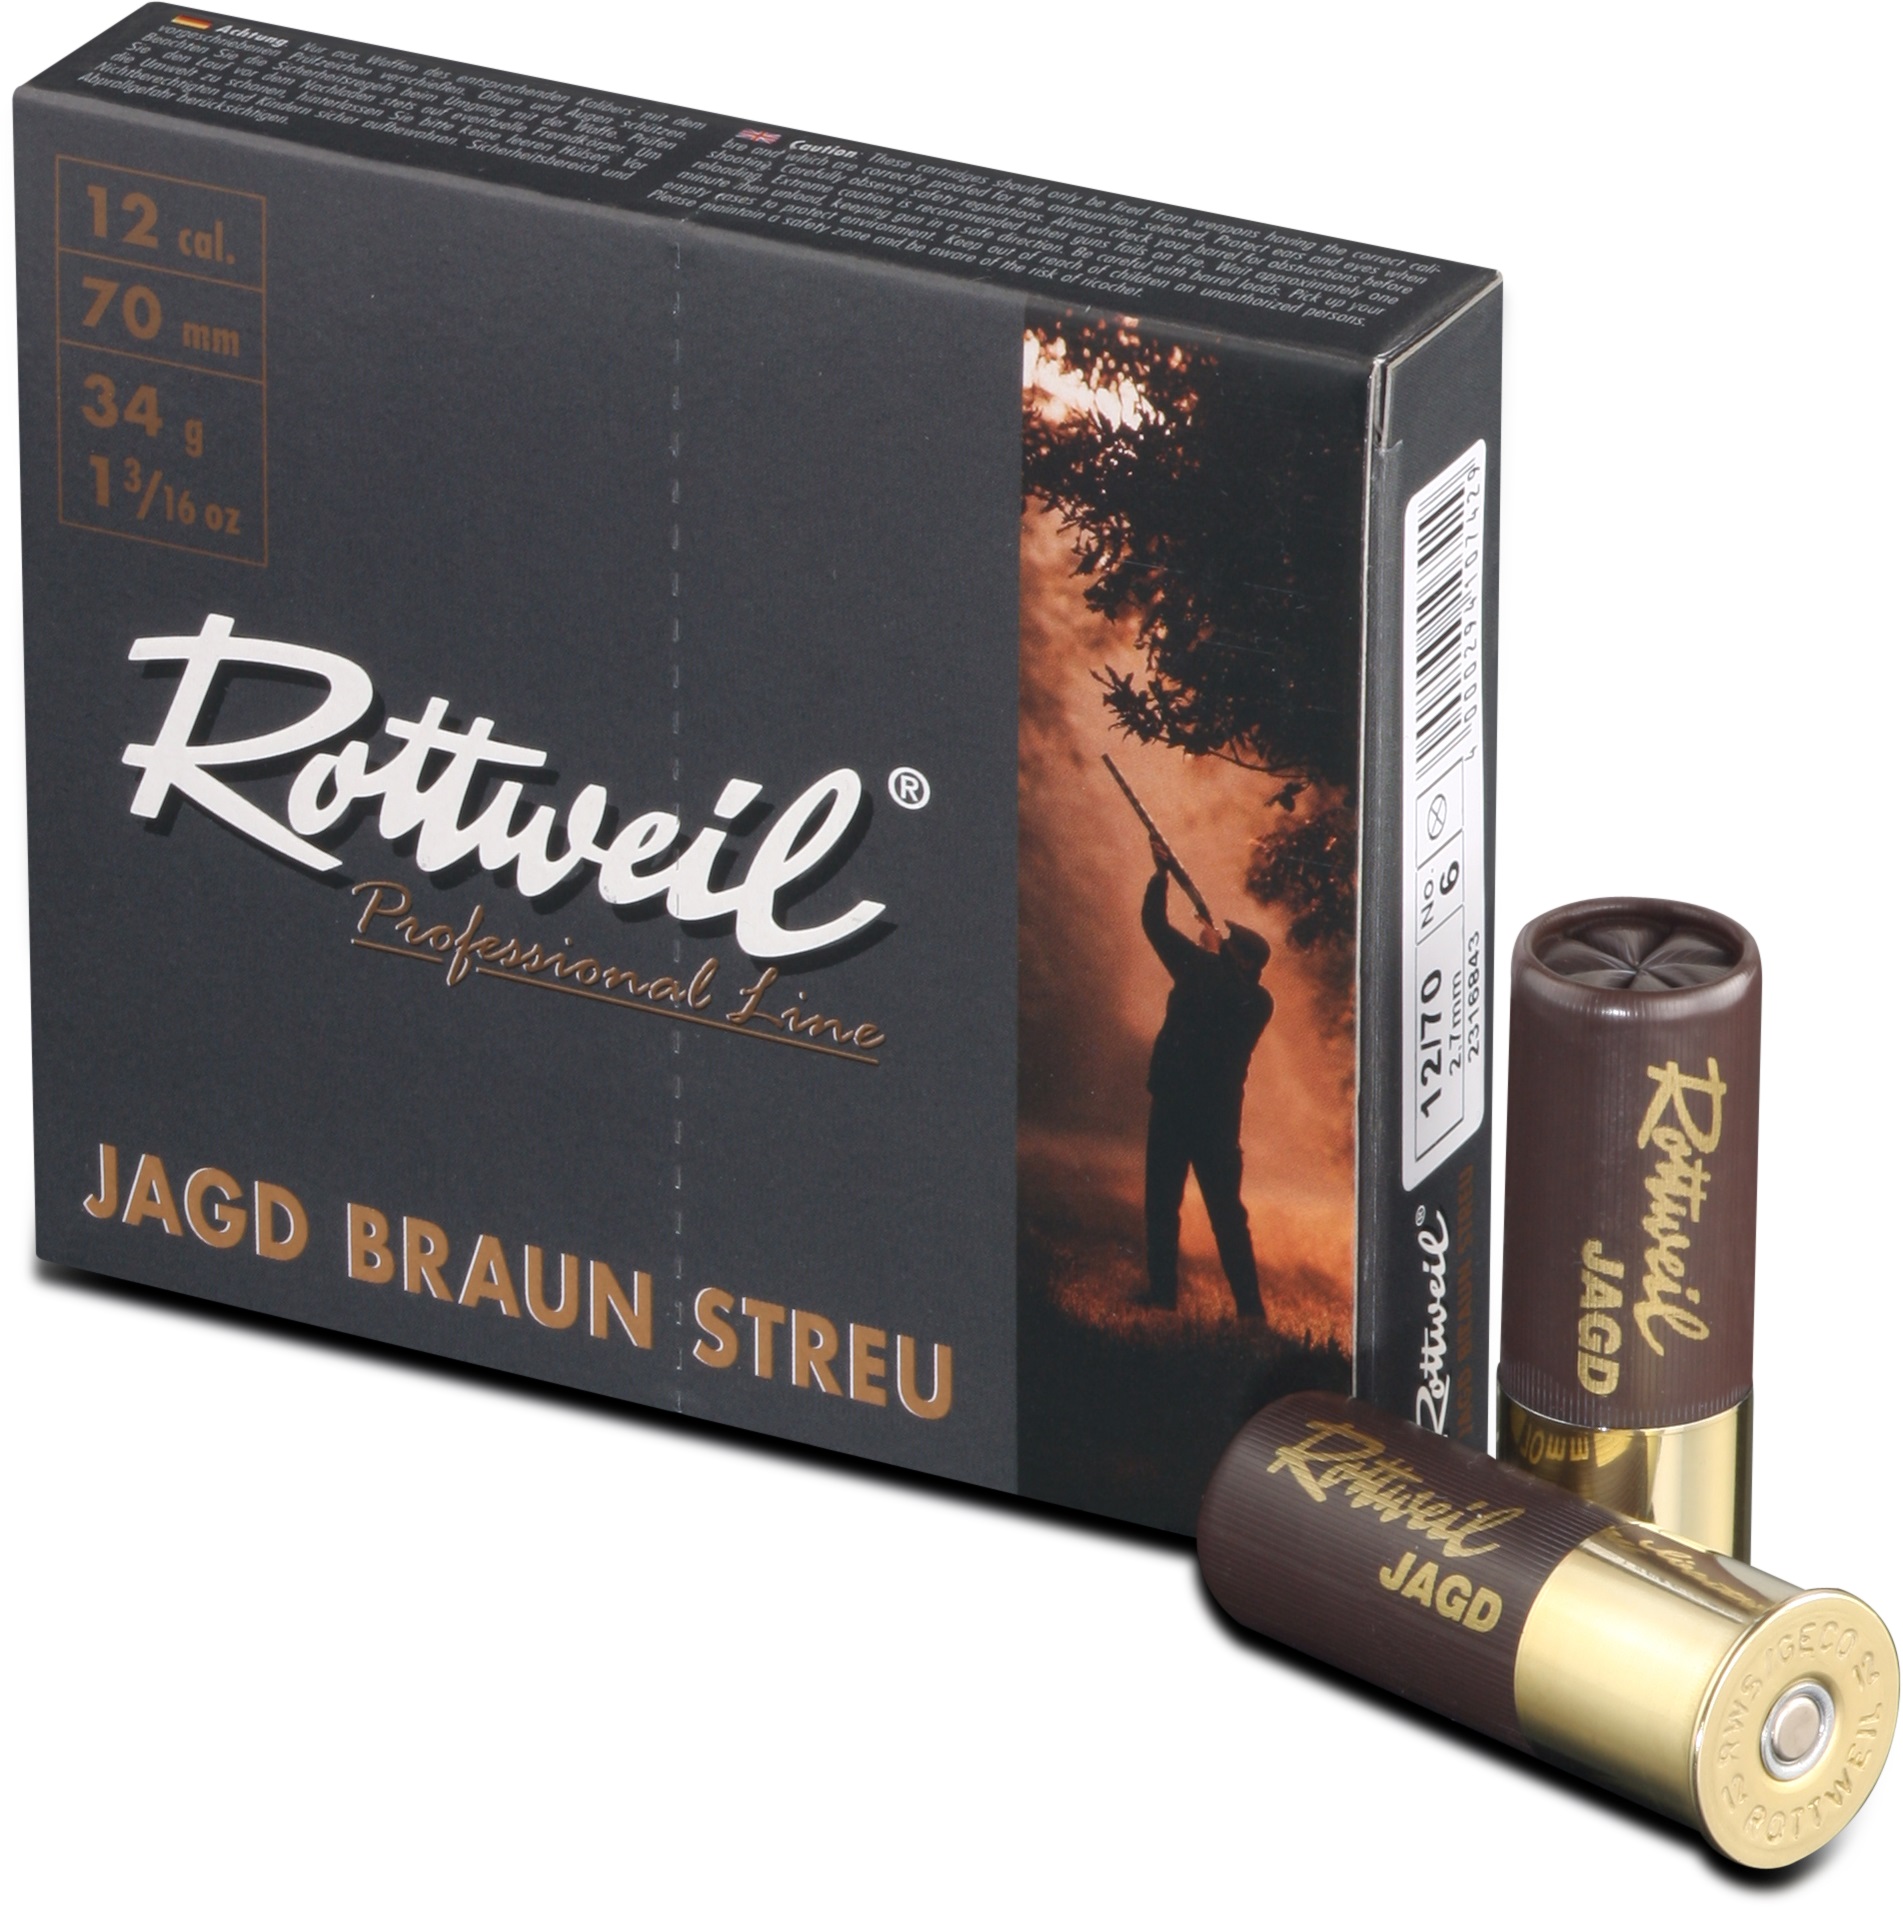 ROTTWEIL Jagd 12/70 3,2mm Streu Plast.10er Packung